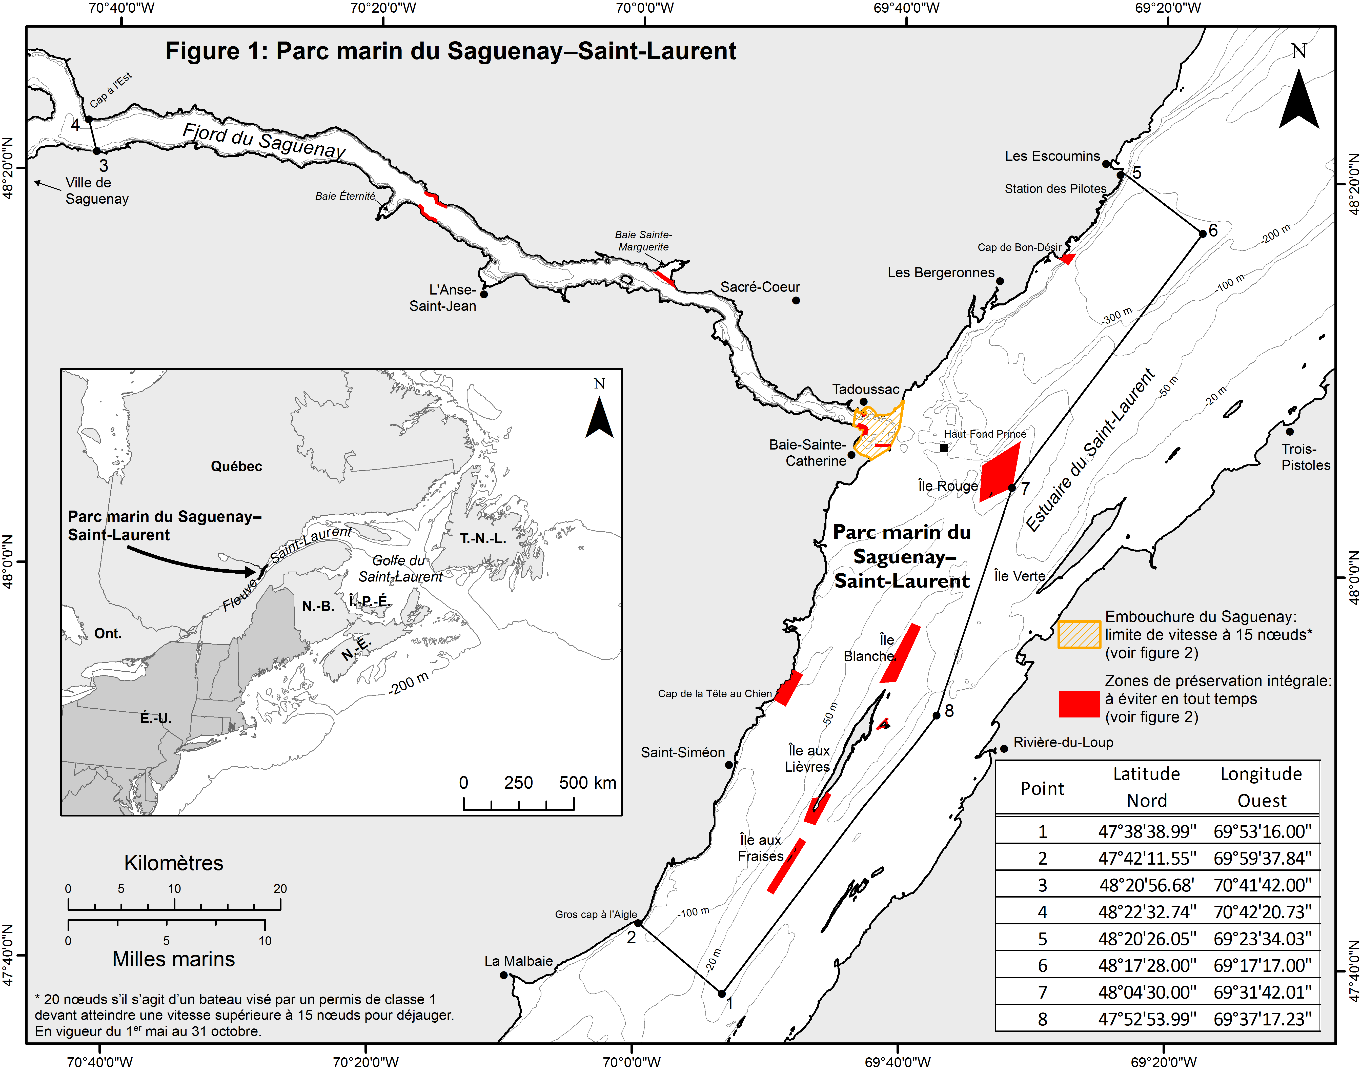 Carte du parc marin Saguenay-Saint-Laurent avec des points
                 de coordonnées pour indiquer ses limites.